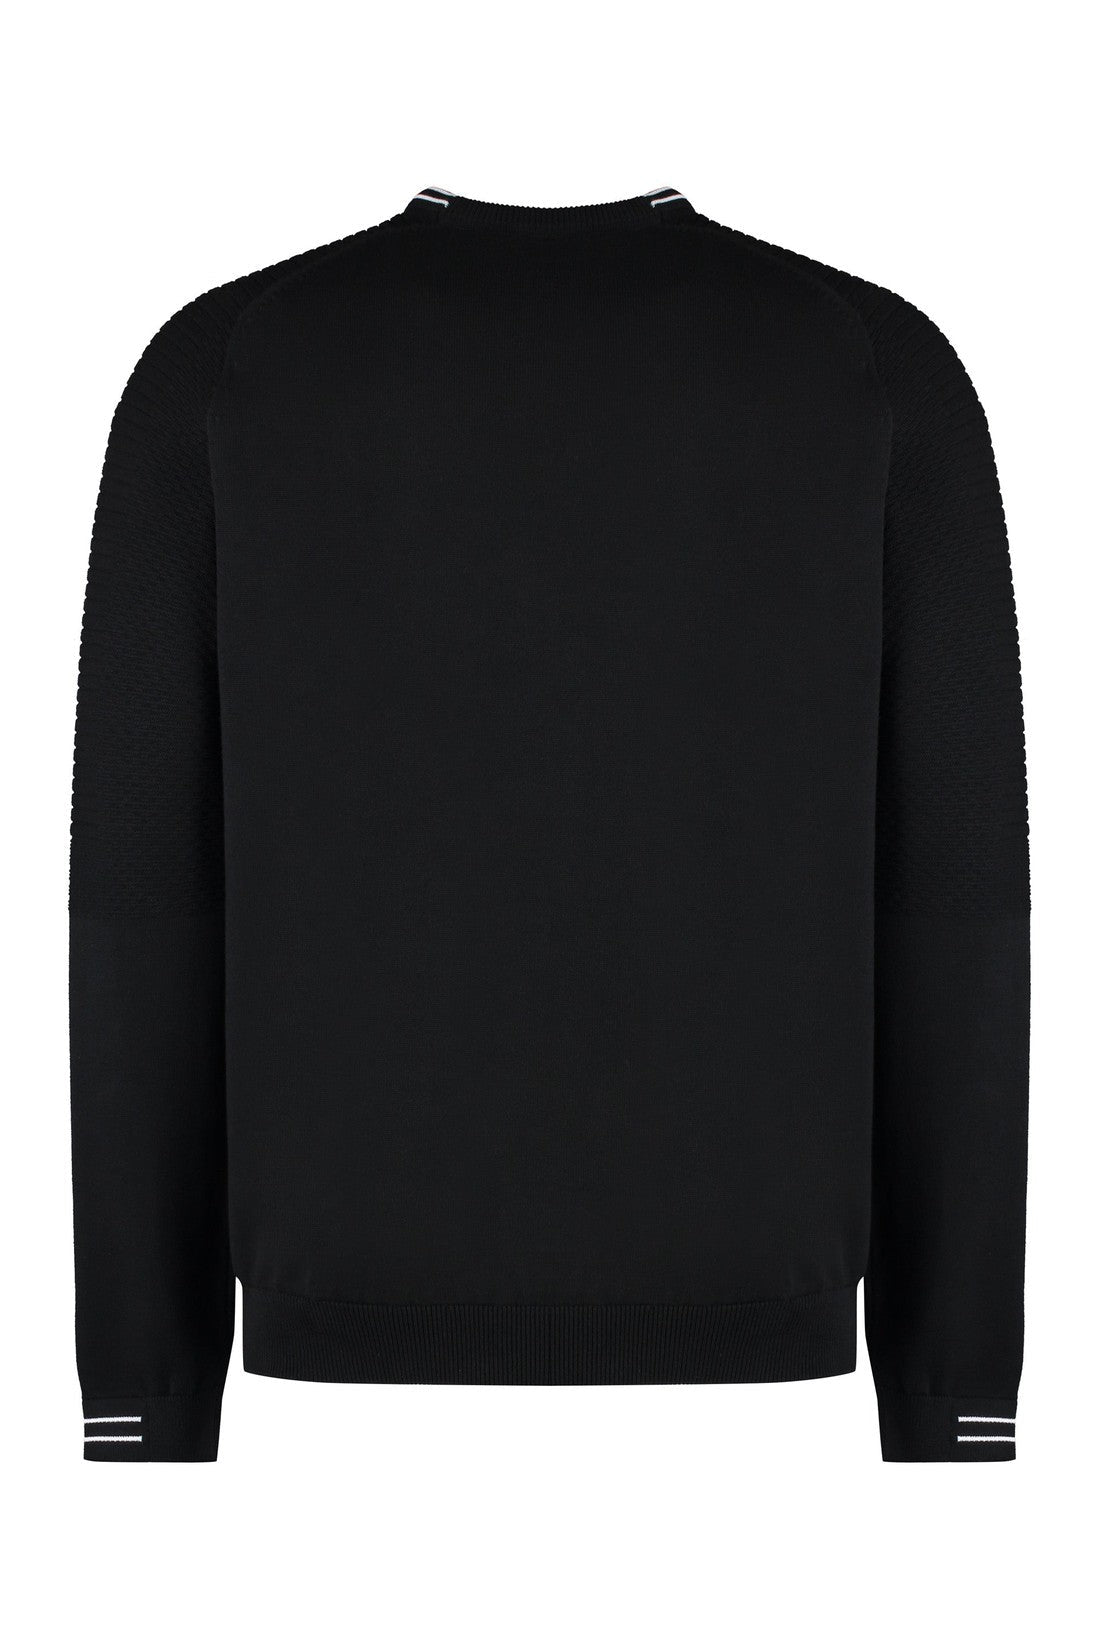 BOSS-OUTLET-SALE-Cotton crew-neck sweater-ARCHIVIST